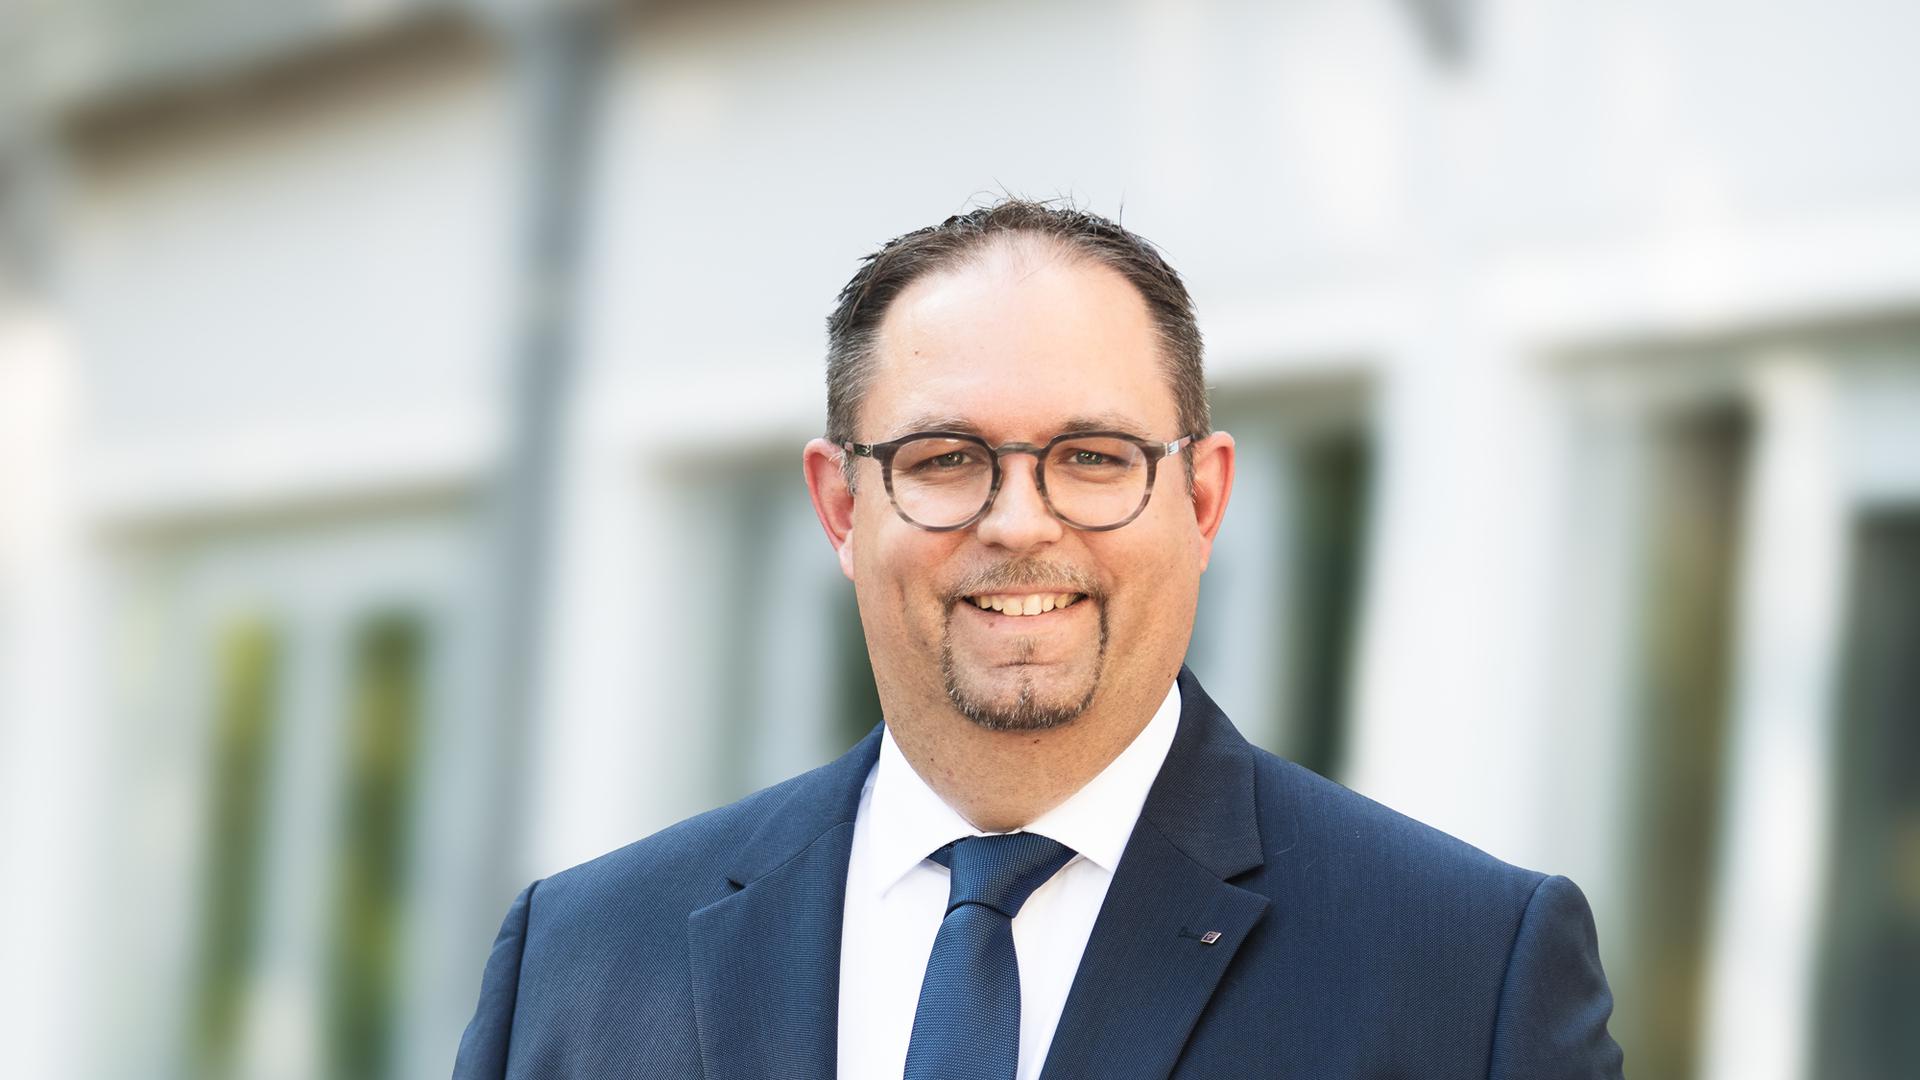 Möchte Bürgemeister werden: Seit April 2022 ist Dominik Wolf für die FDP im Gemeinderat in Eggenstein-Leopoldshafen. Jetzt will der in der Gemeinde heimische Kommunalpolitiker die NAchfolge von Bernd Stober antreten.